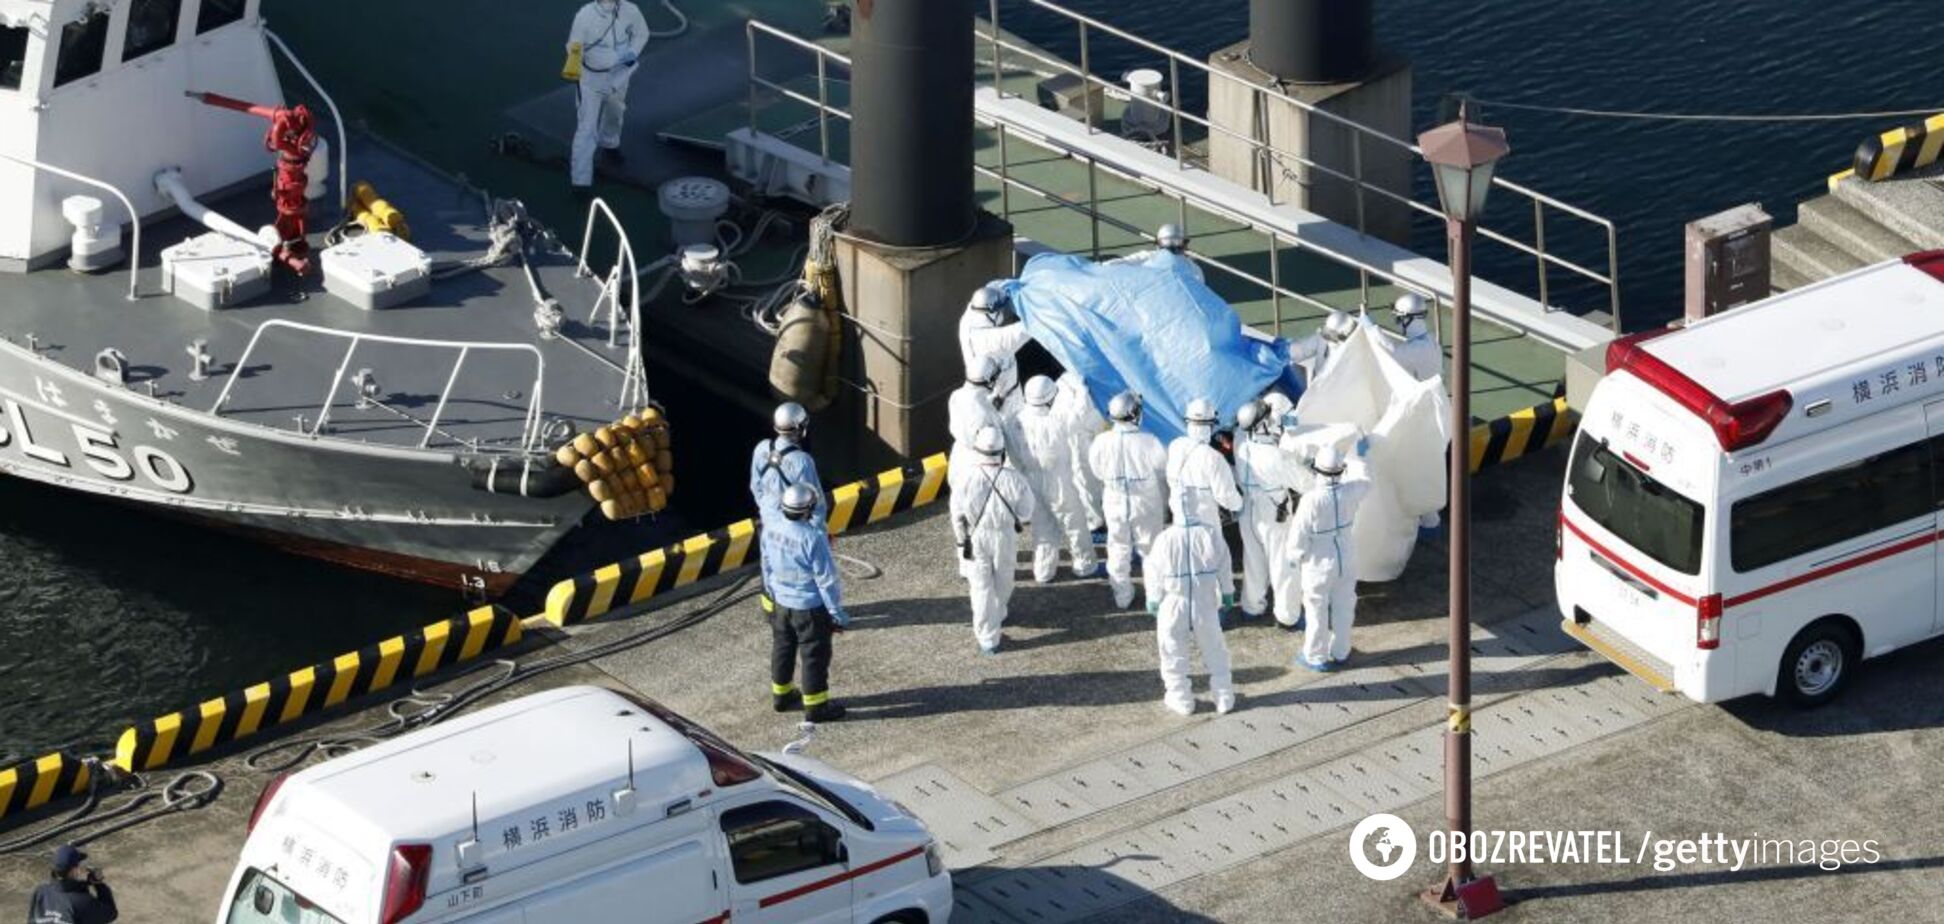 Заперли по каютам: в Японии объявили карантин на круизном лайнере. Фото